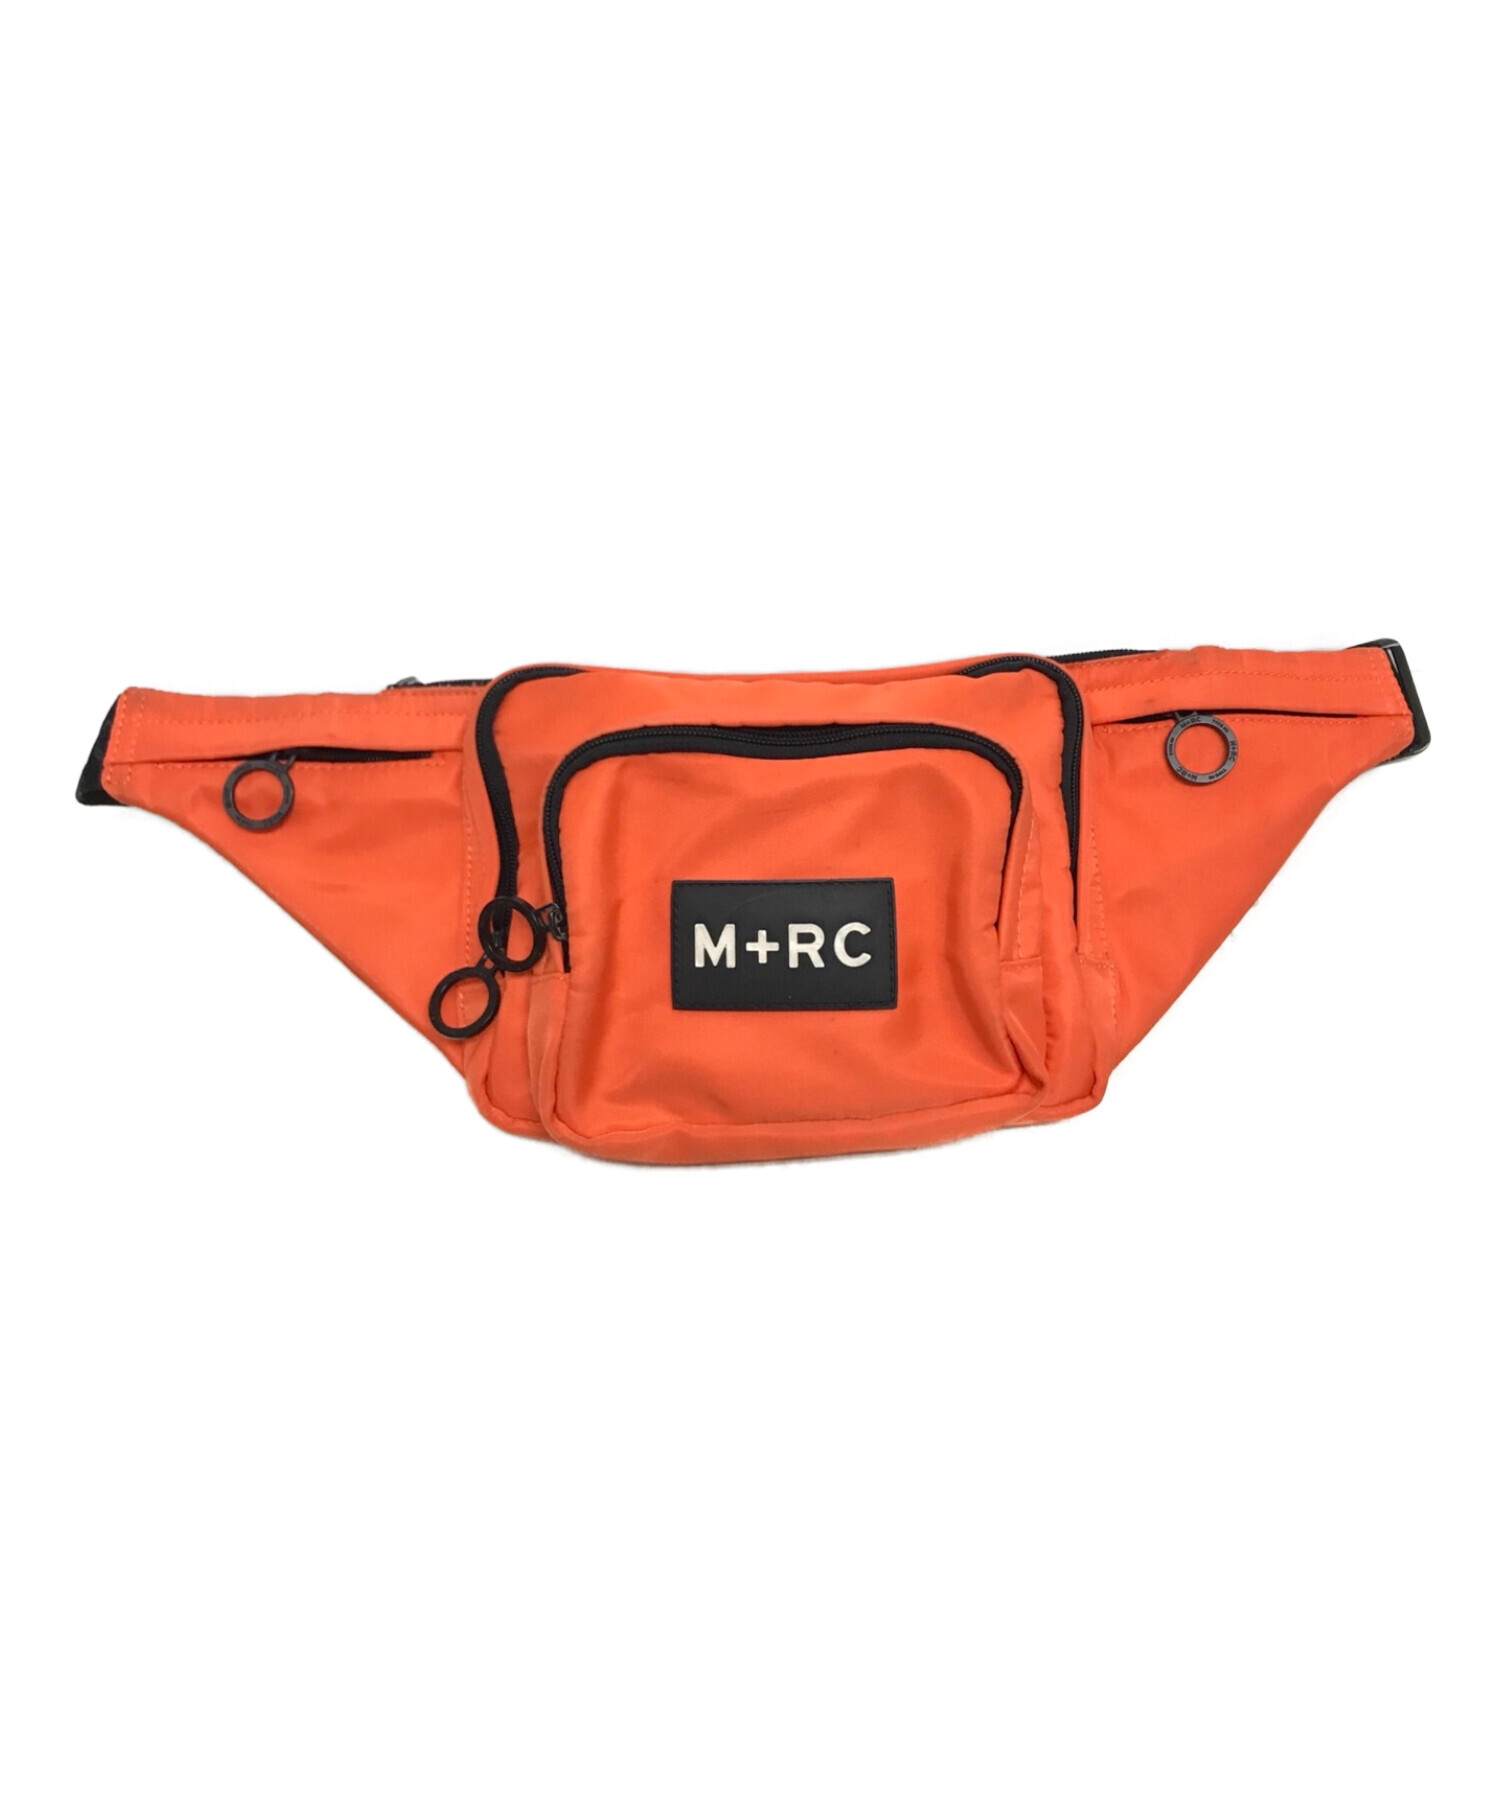 M+RC NOIR (マルシェノア) ロゴ ウエストバッグ ボディ オレンジ サイズ:下記参照